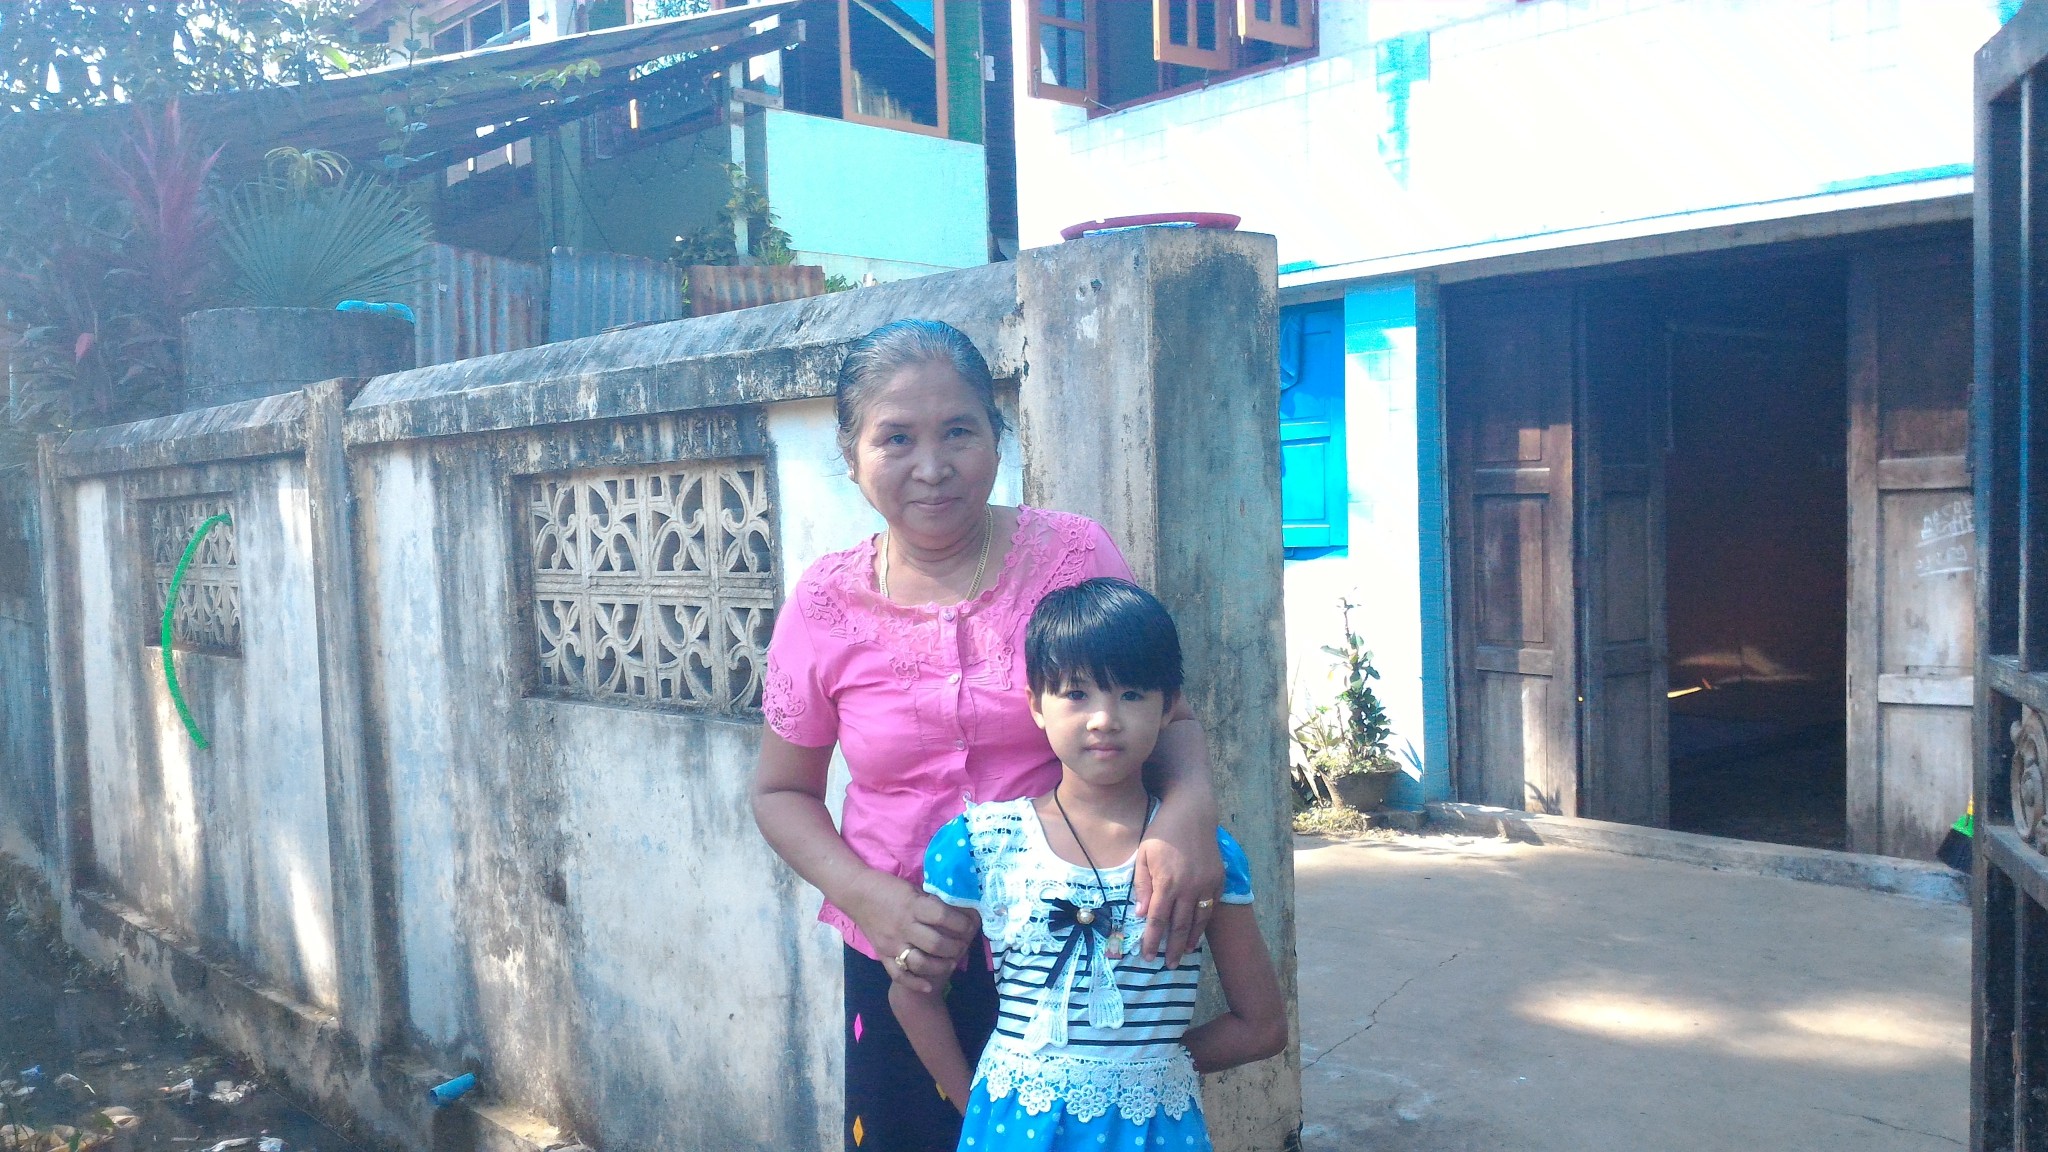 すこしさみしそうだけど笑顔がいっぱいのお母さんがいた-ミャンマー実習生家庭訪問記